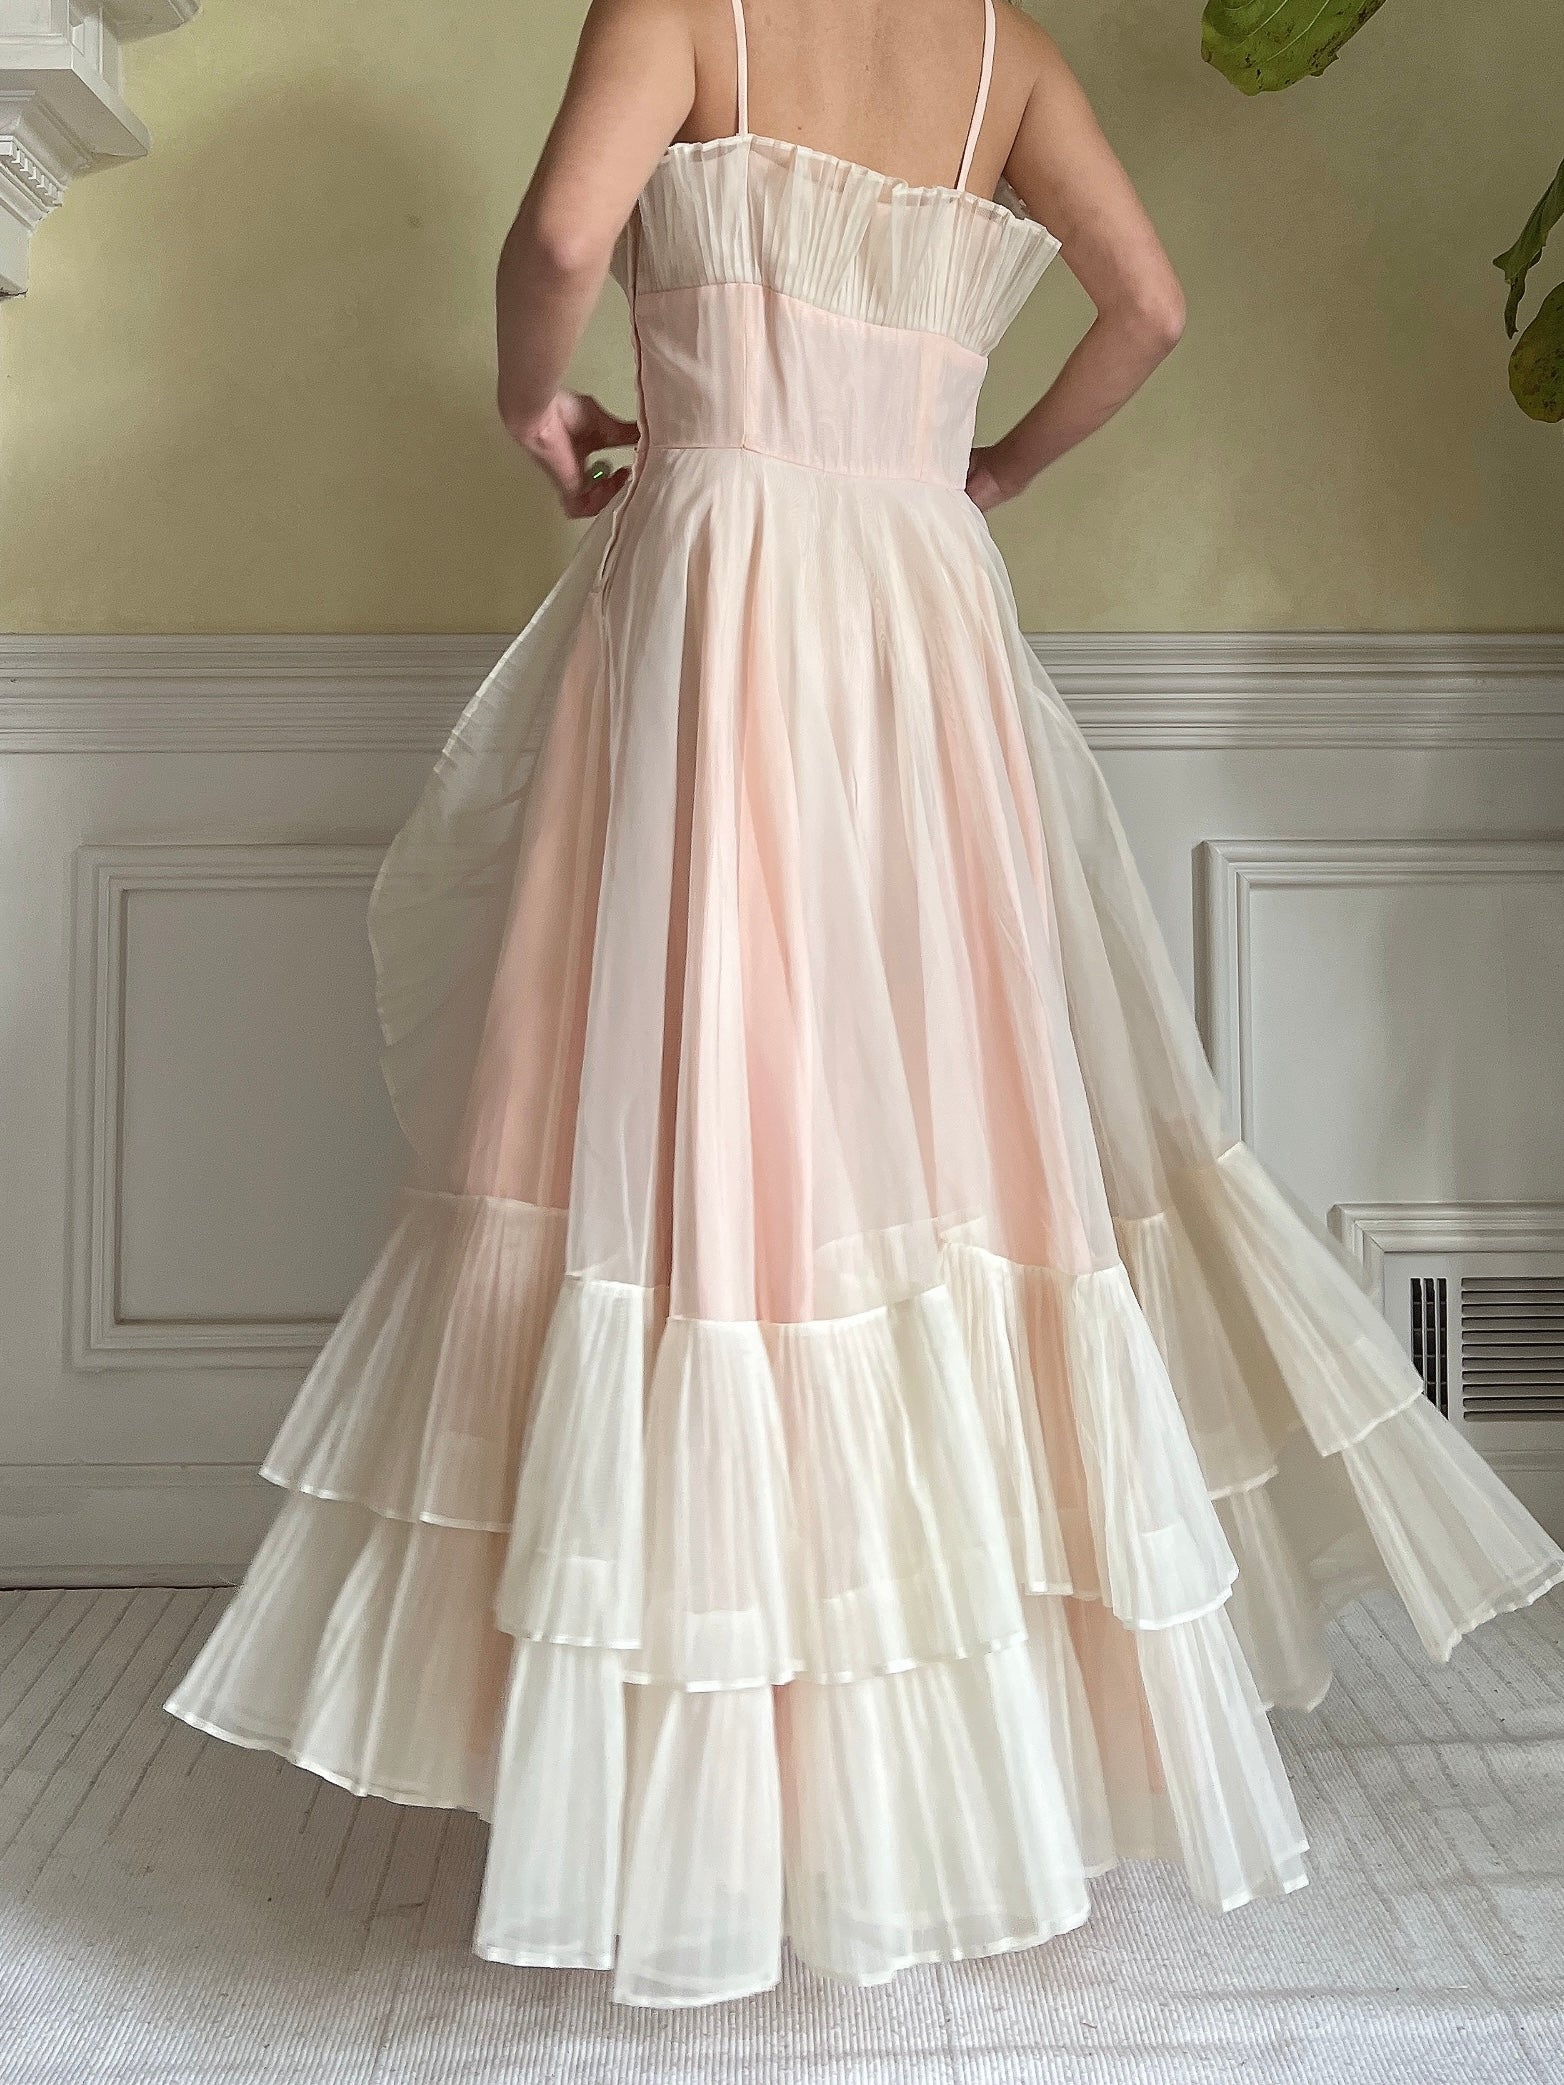 1950s Net Chiffon Ruffle Dress - XS/S